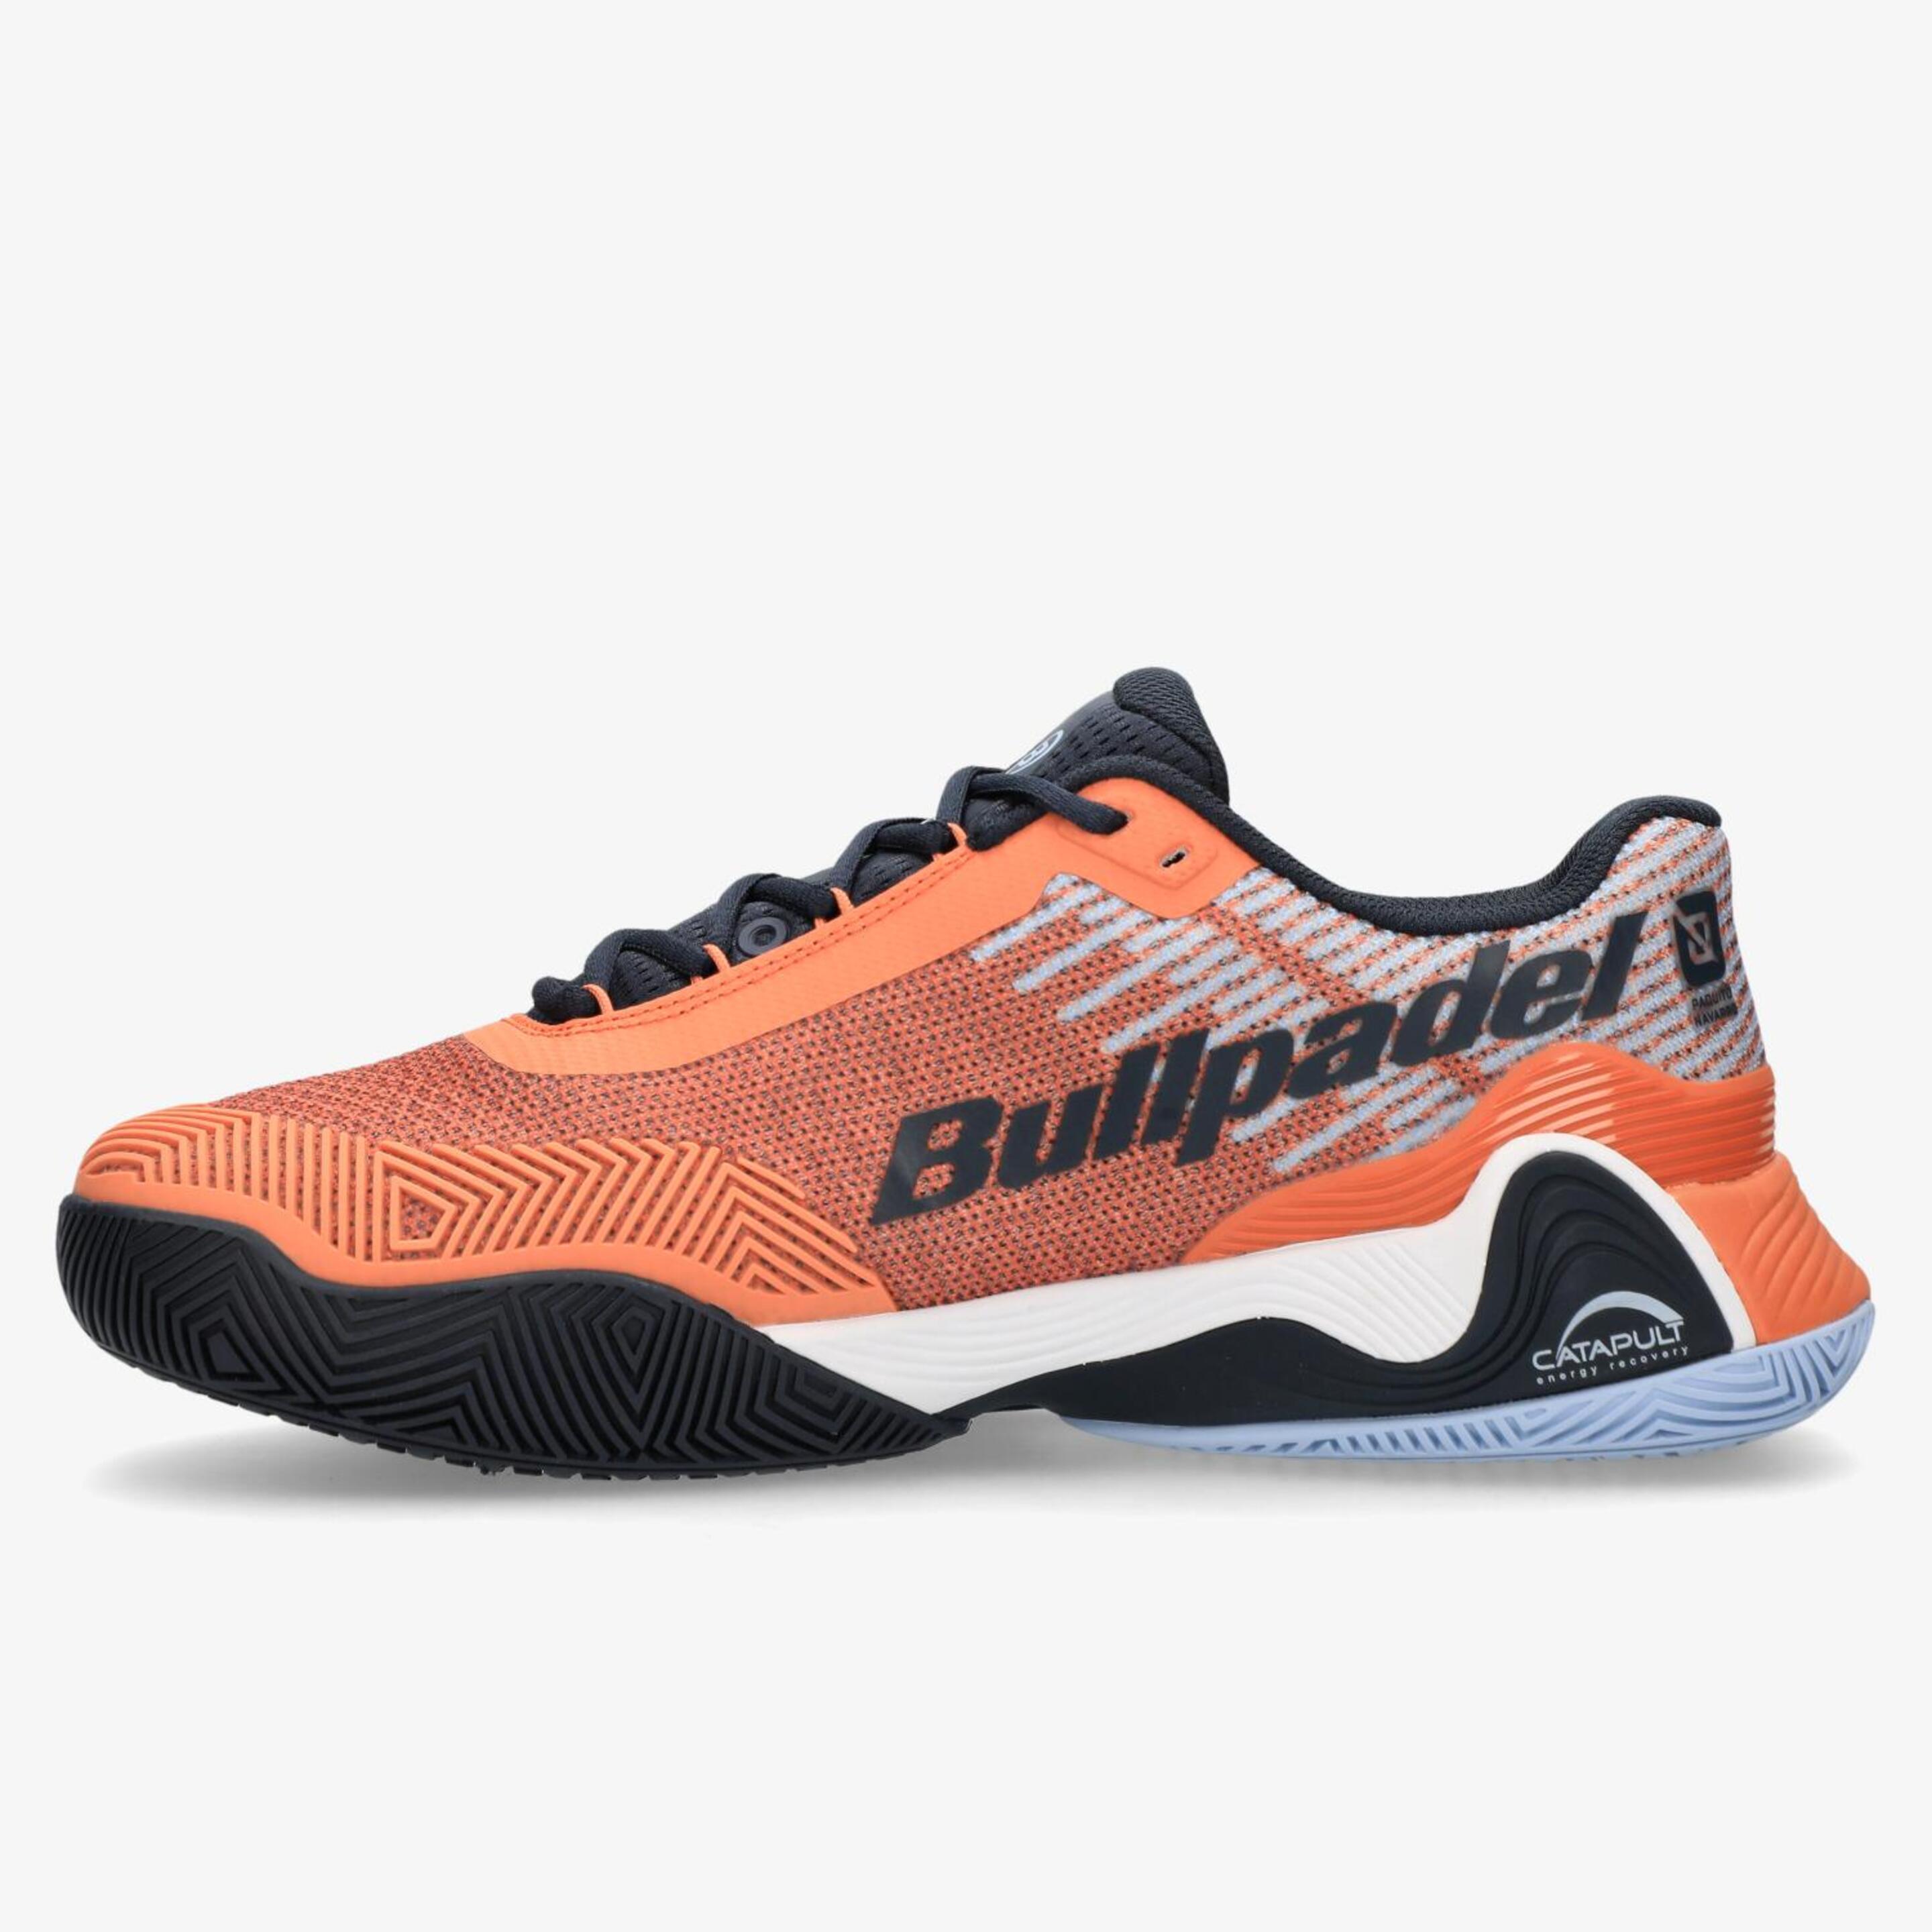 Bullpadel Hack Vibram - Naranja - Zapatillas Pádel Hombre  | Sprinter